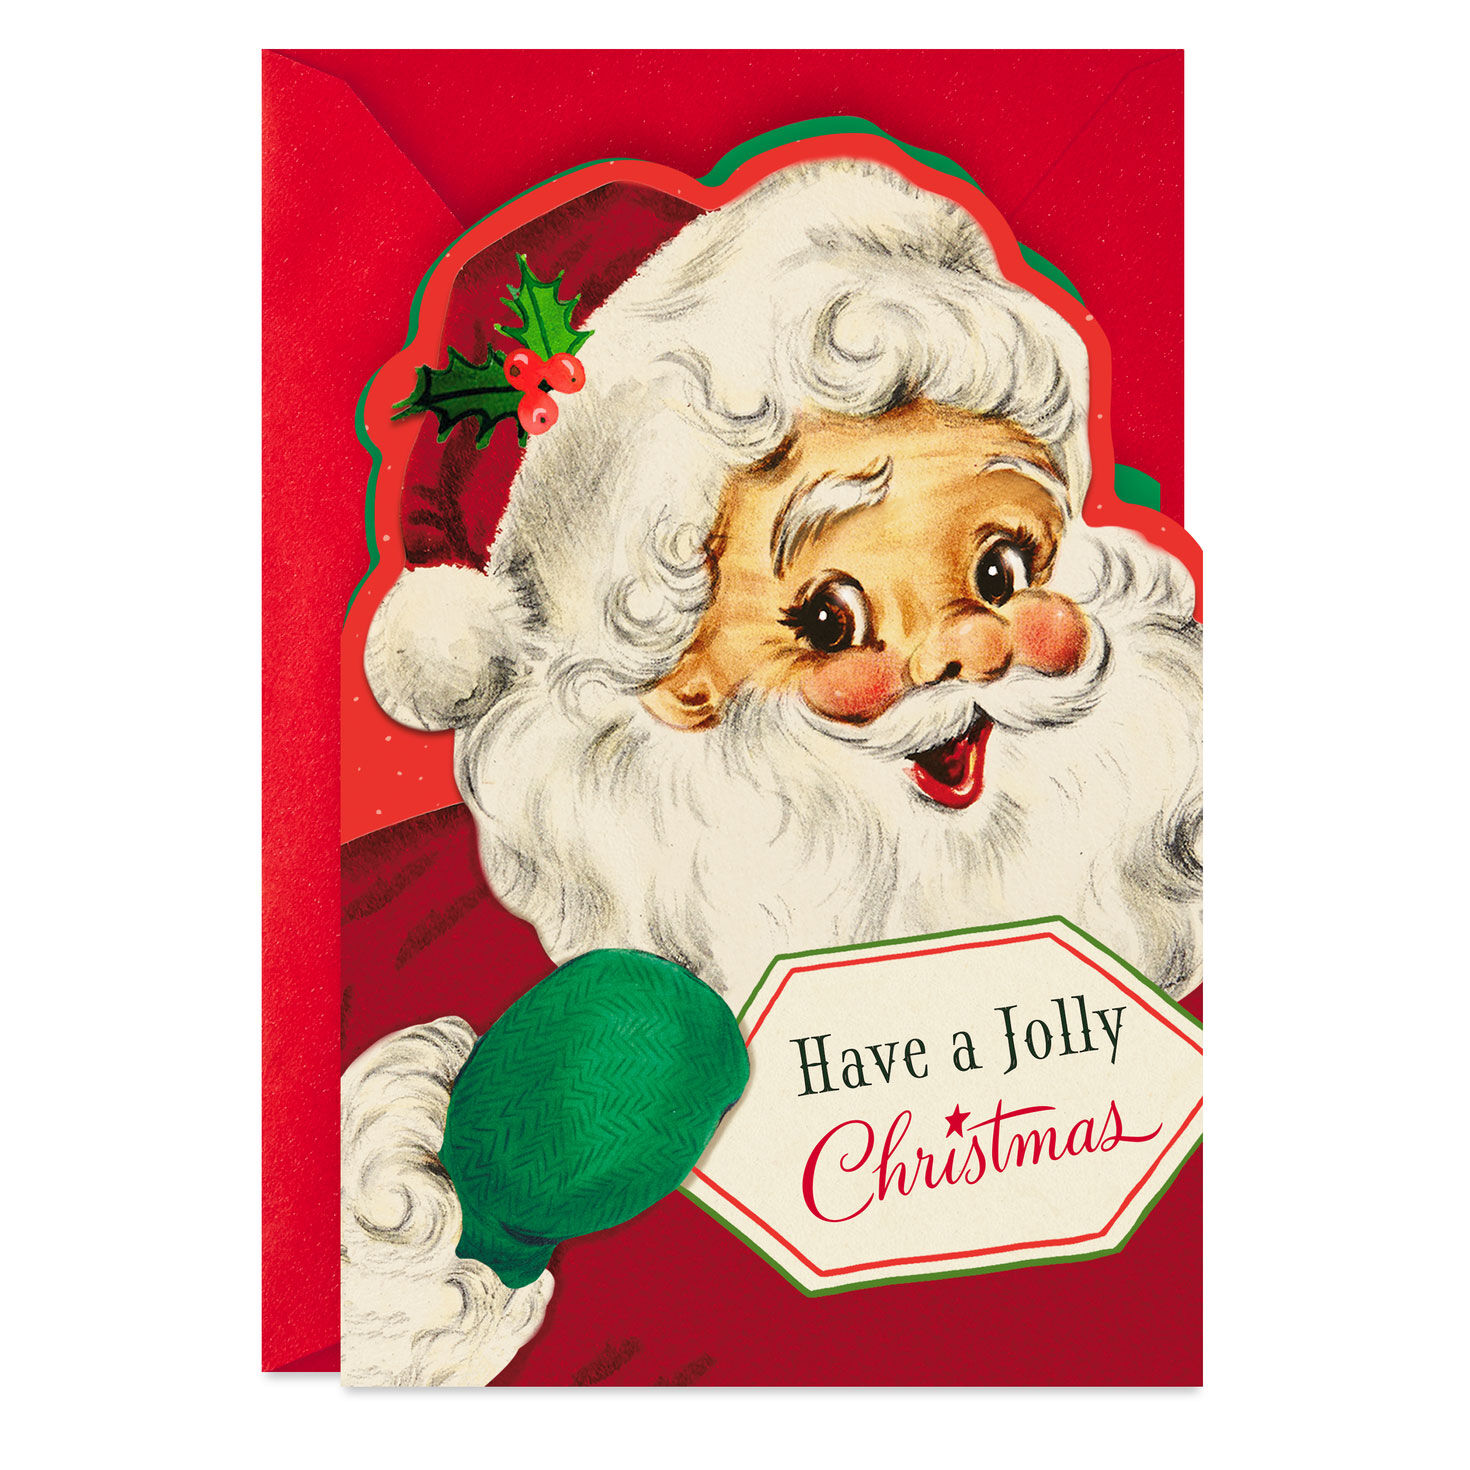 Holiday Christmas Card Santa Claus Jolly Holidays Gift Greeting Card Vintage 